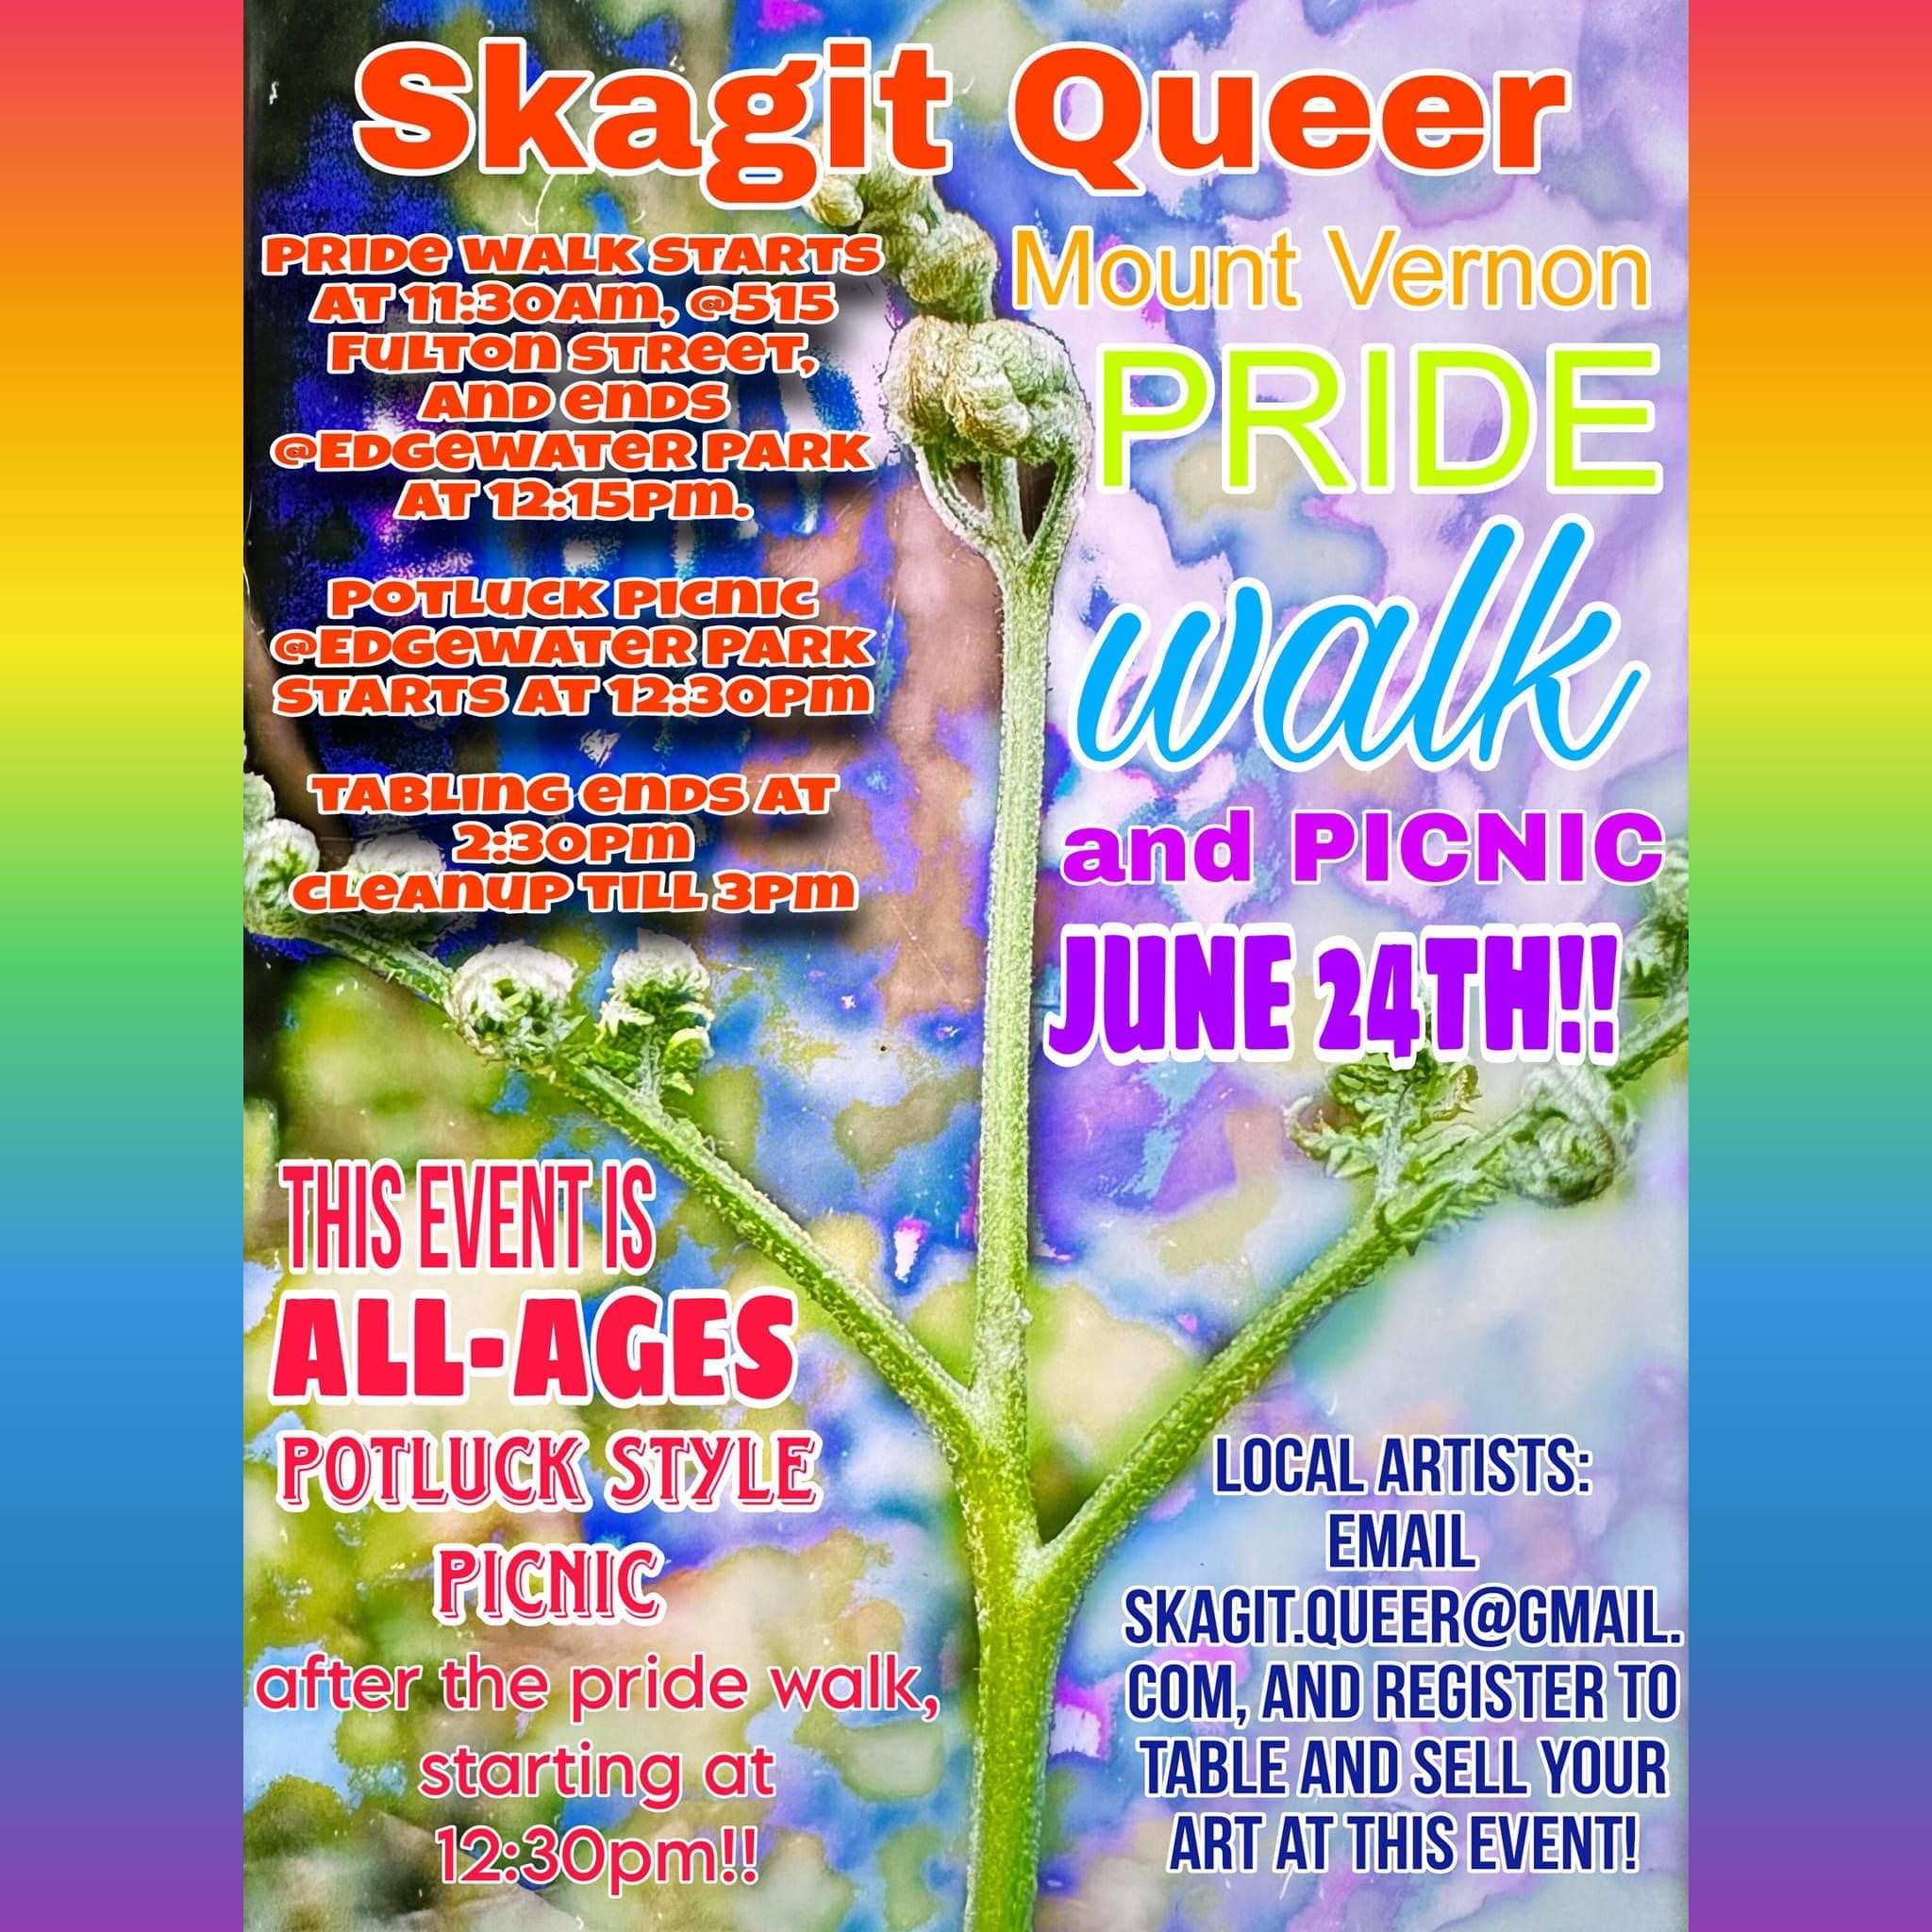 Mount Vernon Pride Walk and Picnic June 24th